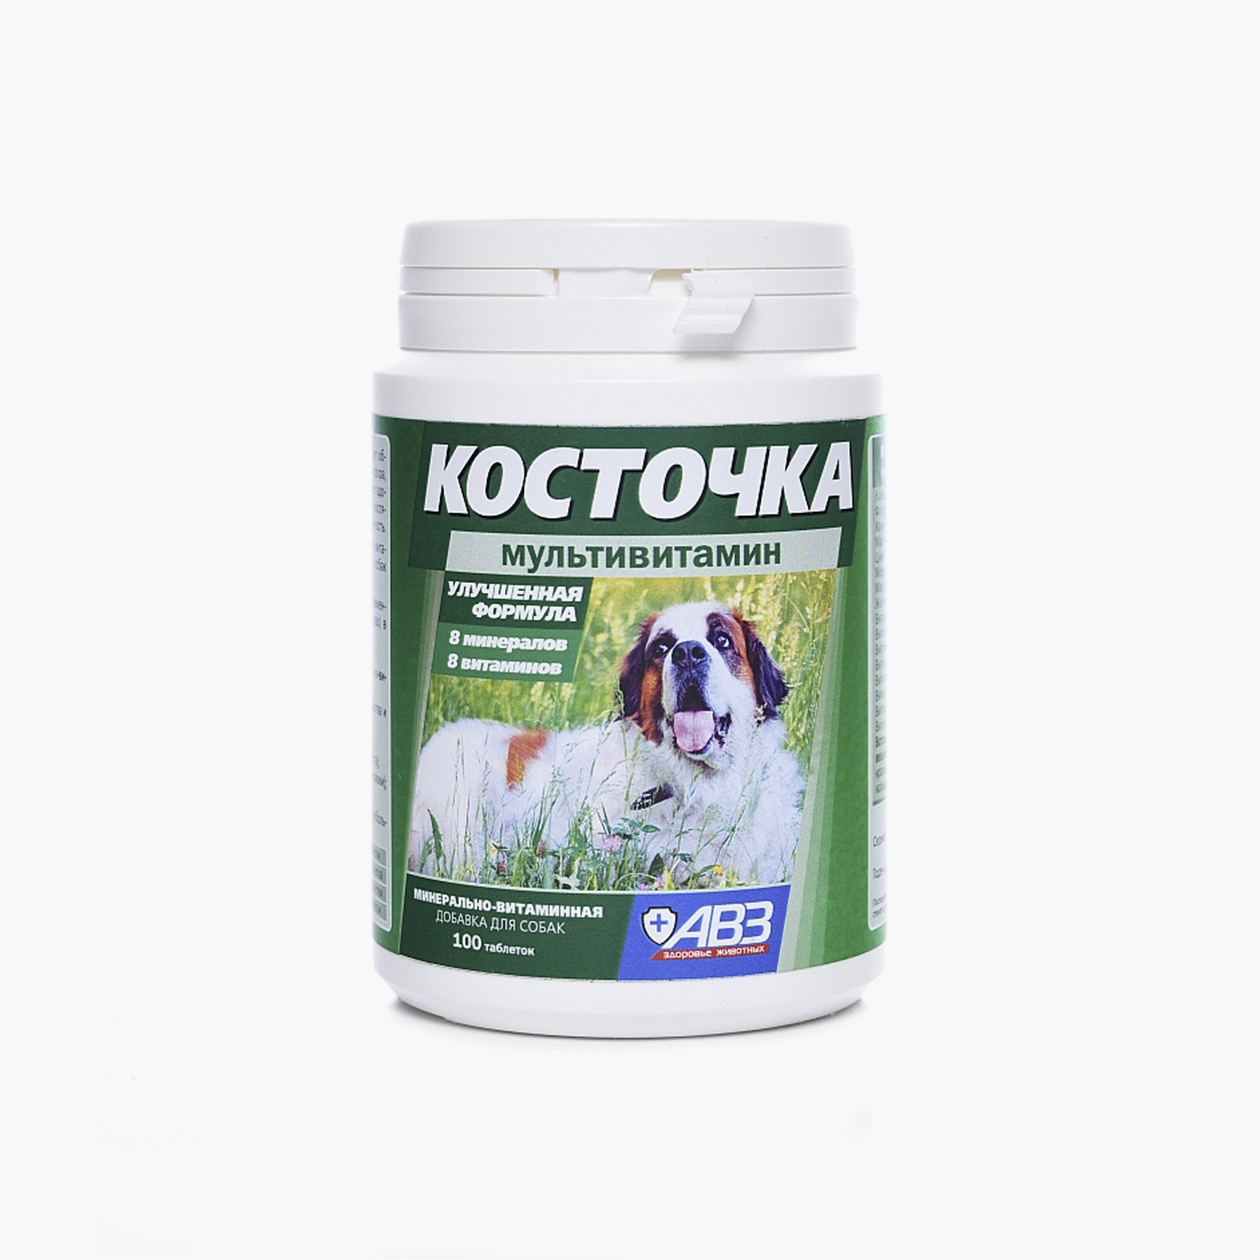 Пример мультивитаминов, которые можно давать собаке на домашнем питании. Это минерально-витаминная подкормка «Косточка», 100 таблеток стоят от 400 ₽. Источник: avzvet.ru